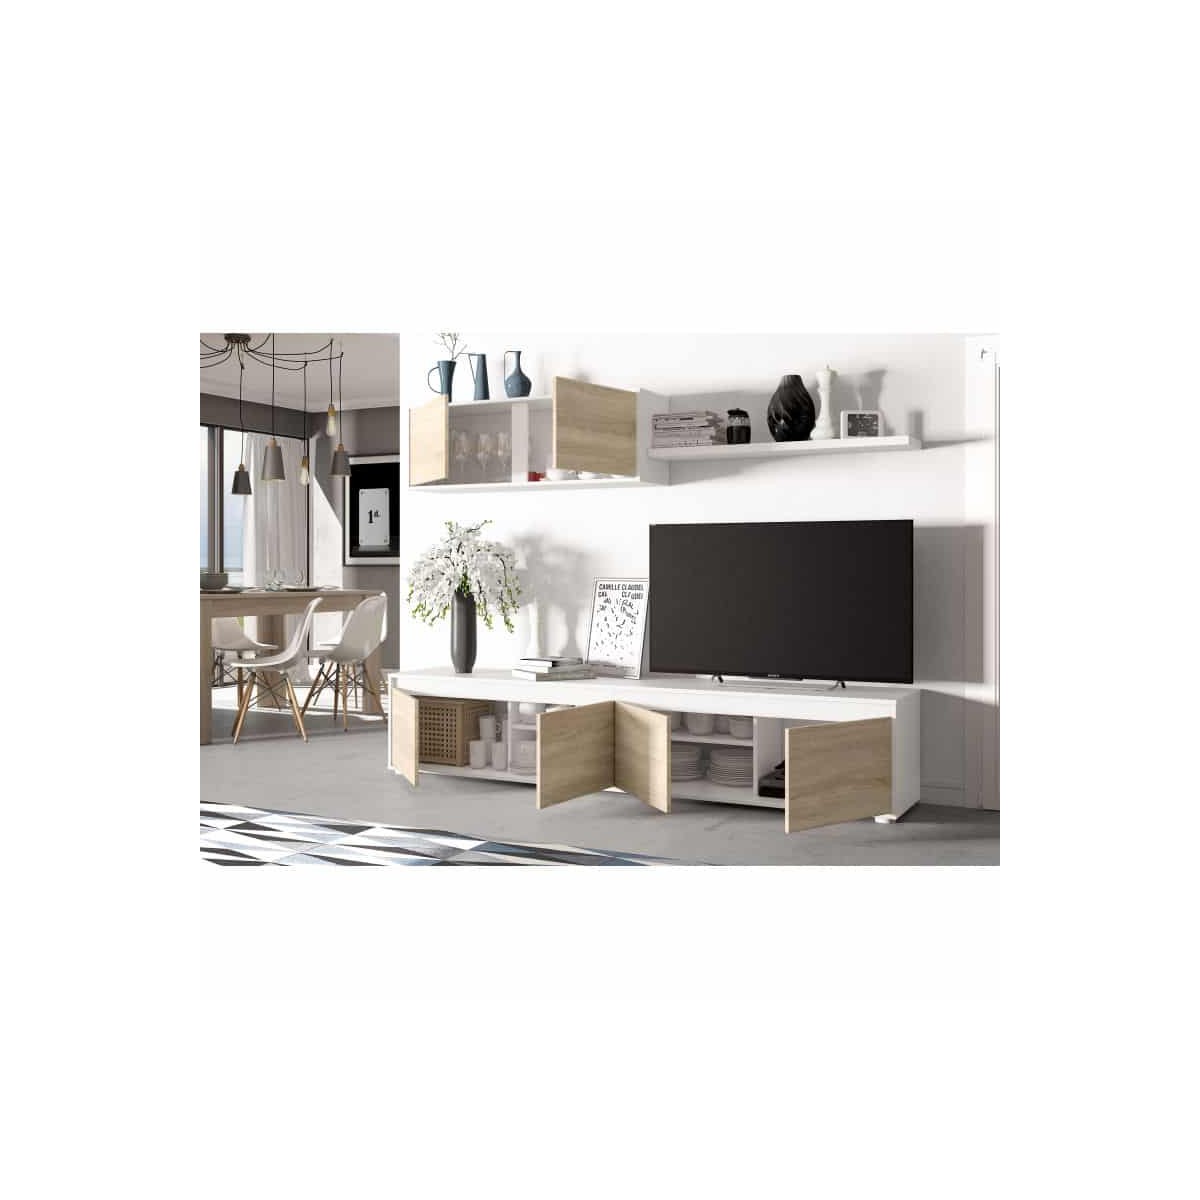 Mueble TV bajo de pared blanco Sage WH 4 estantes 2 armarios